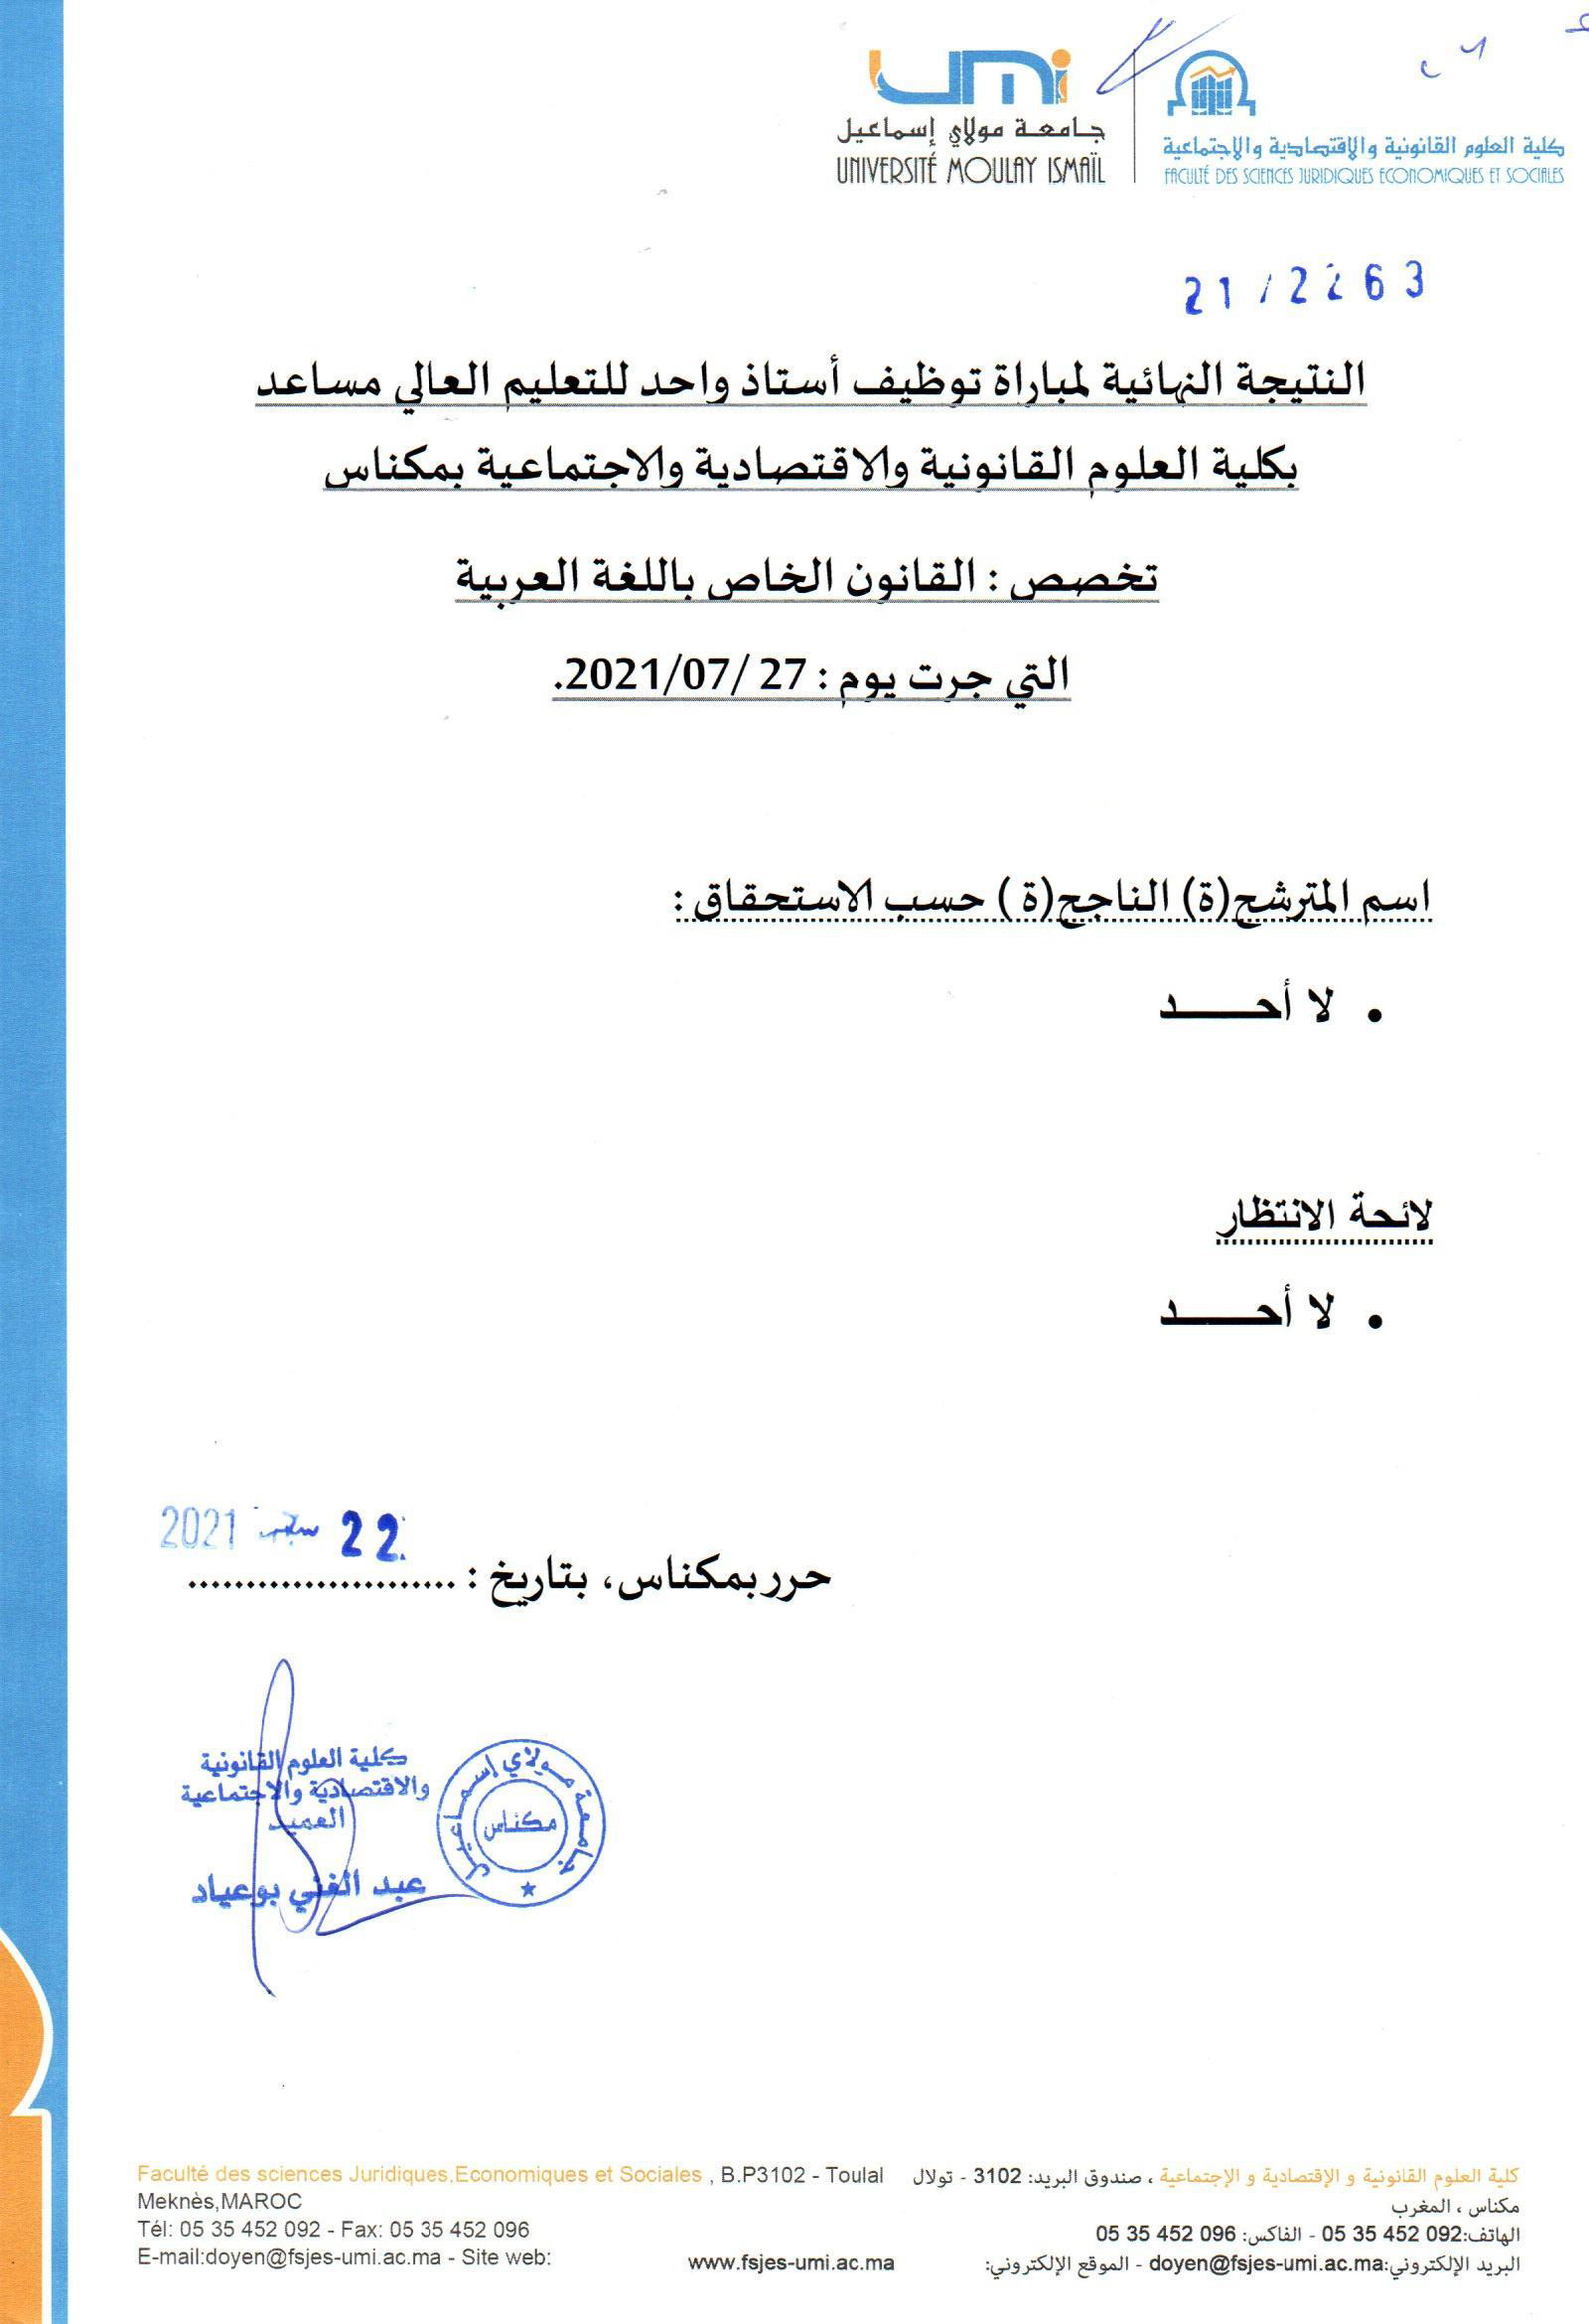 Résultat Final : droit privé en langue arabe du 27/07/2021